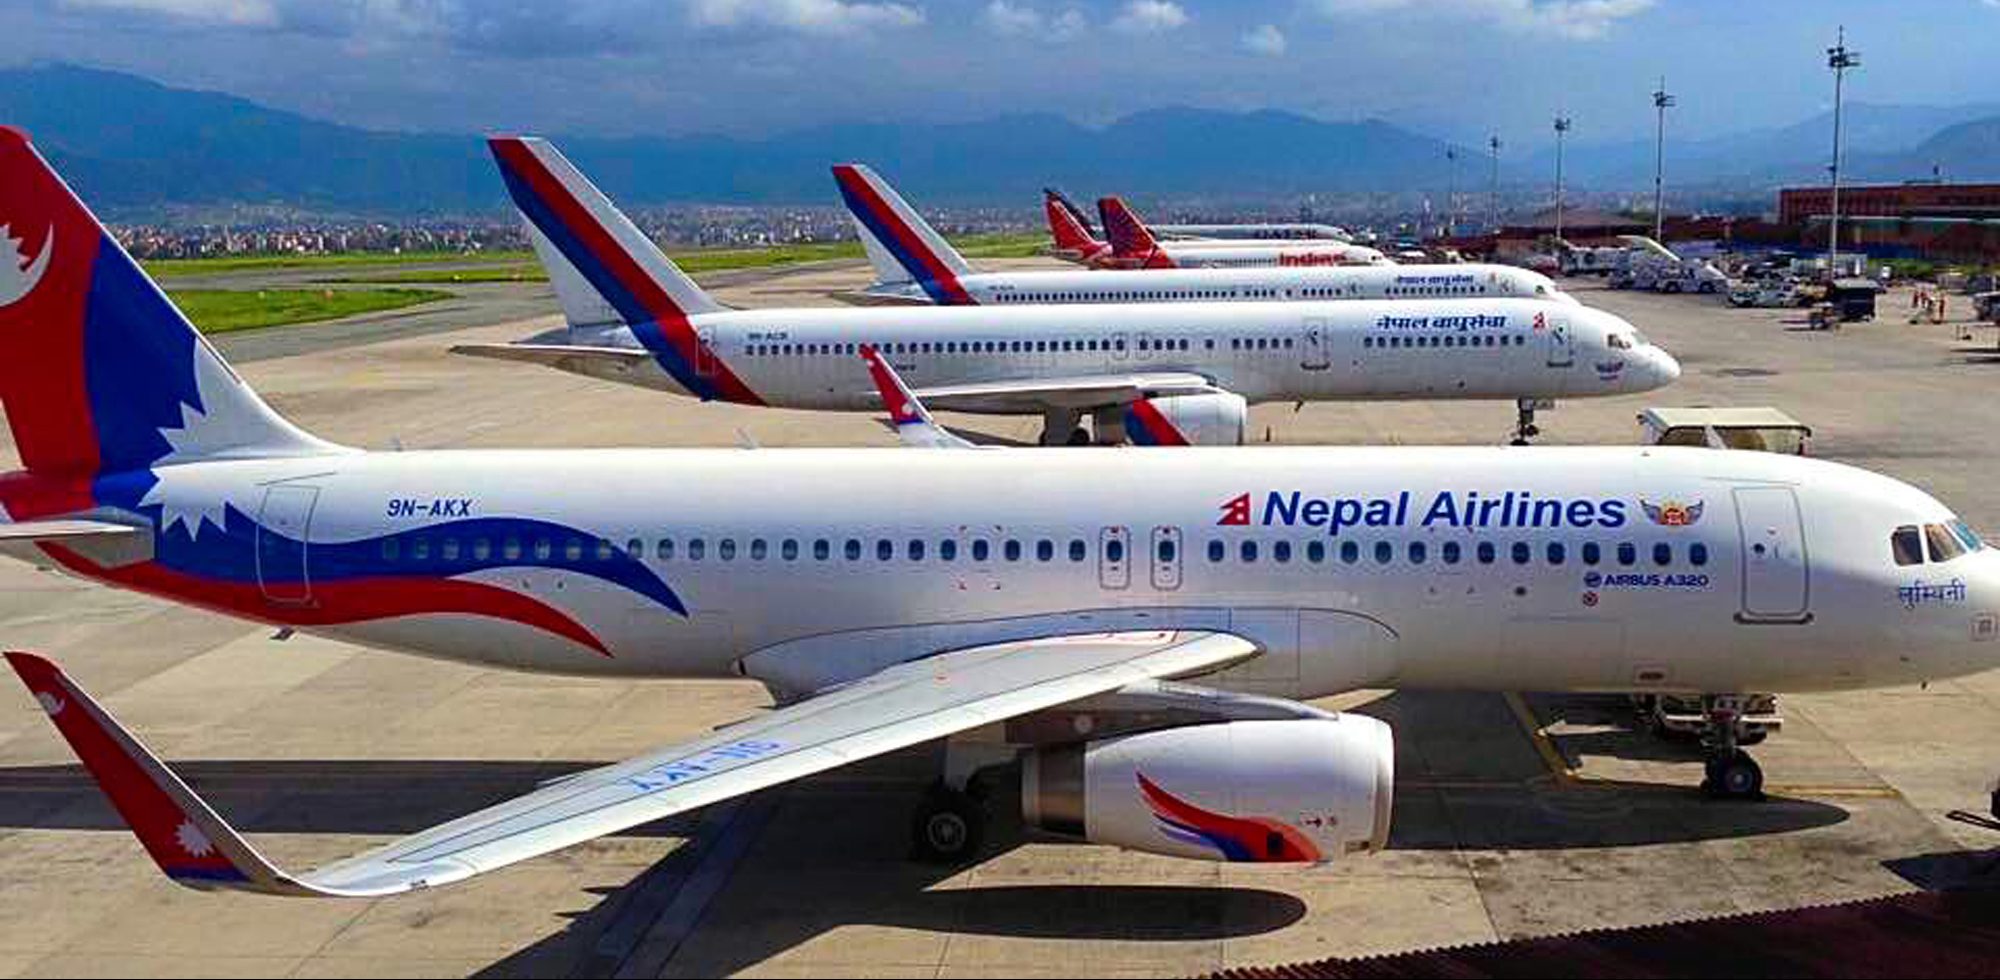 व्यवसायीक योजना बिनै नेपाल एयरलाइन्सका लागी थप १० वटा जहाज खरिद गर्ने तयारी